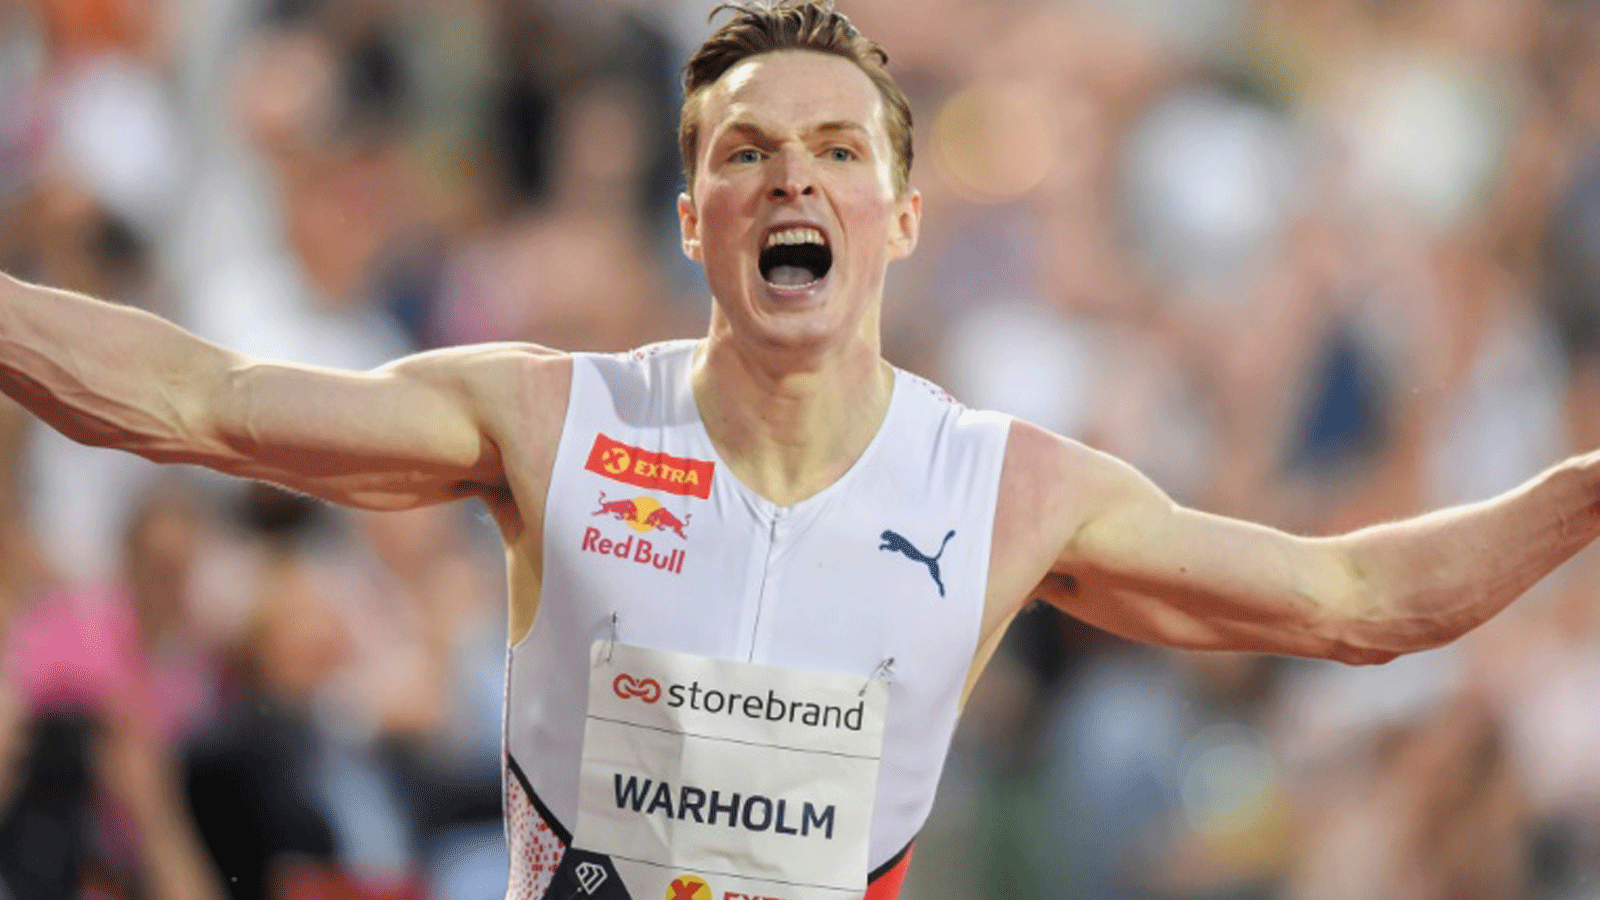 النروجي كارستن فارهولم يحتفل بتحطيمه الرقم القياسي العالمي في سباق 400 م حواجز في أوسلو في الاول من تموز/يوليو 2021.